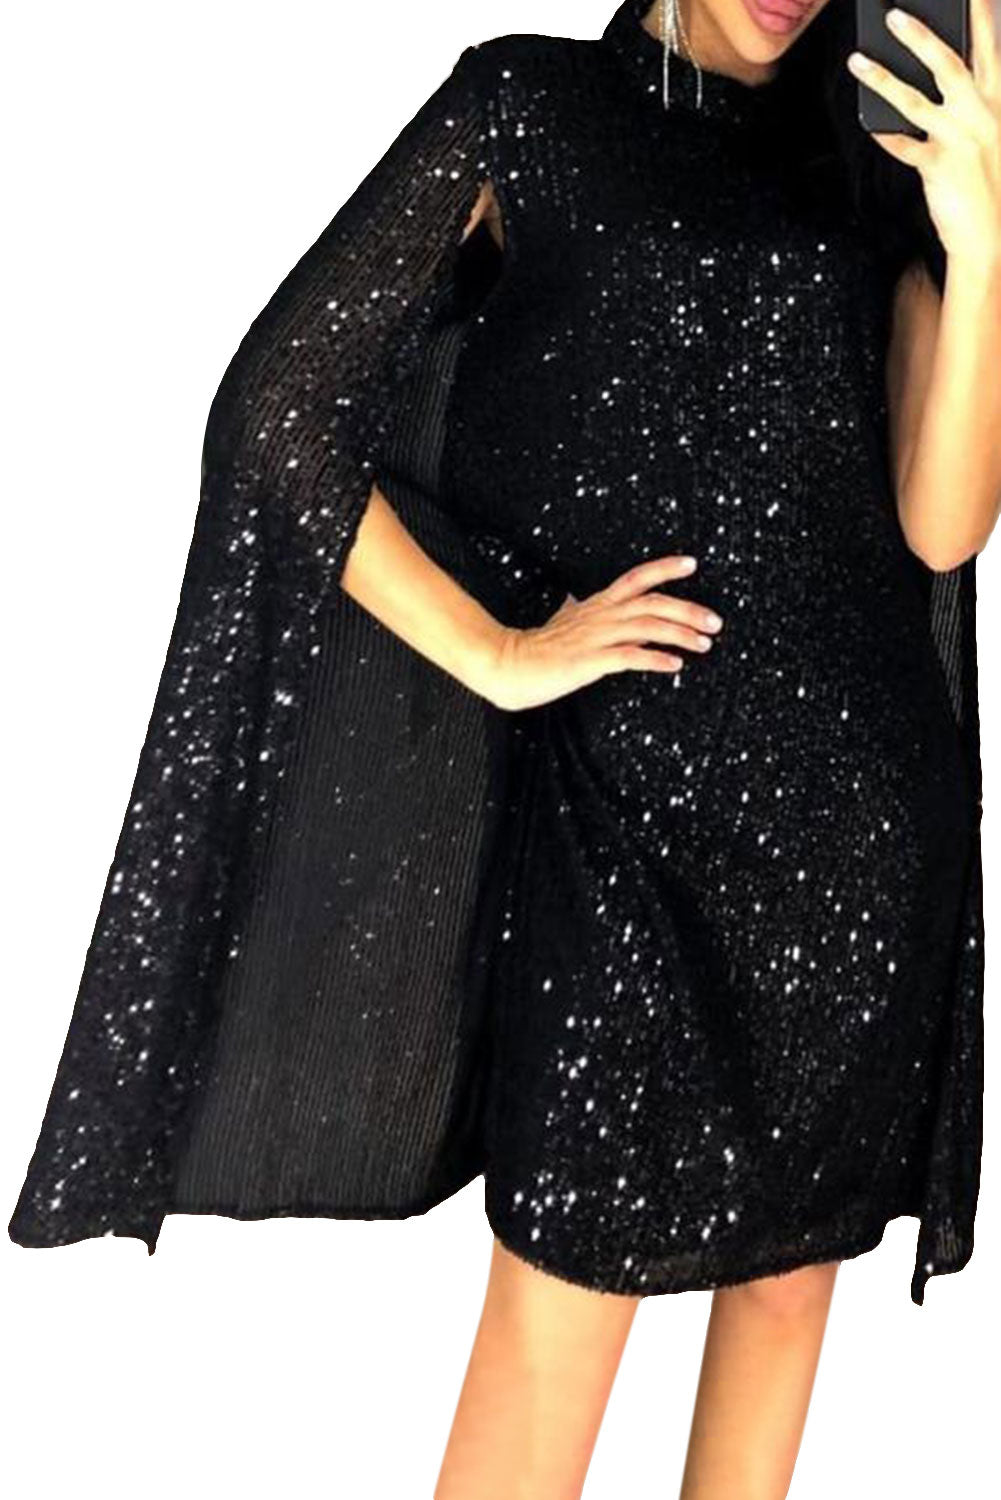 Black Glitter Mock Neck Cape Design Sequins Dress Black 95%Polyester+5%Spandex Sequin Dresses JT's Designer Fashion